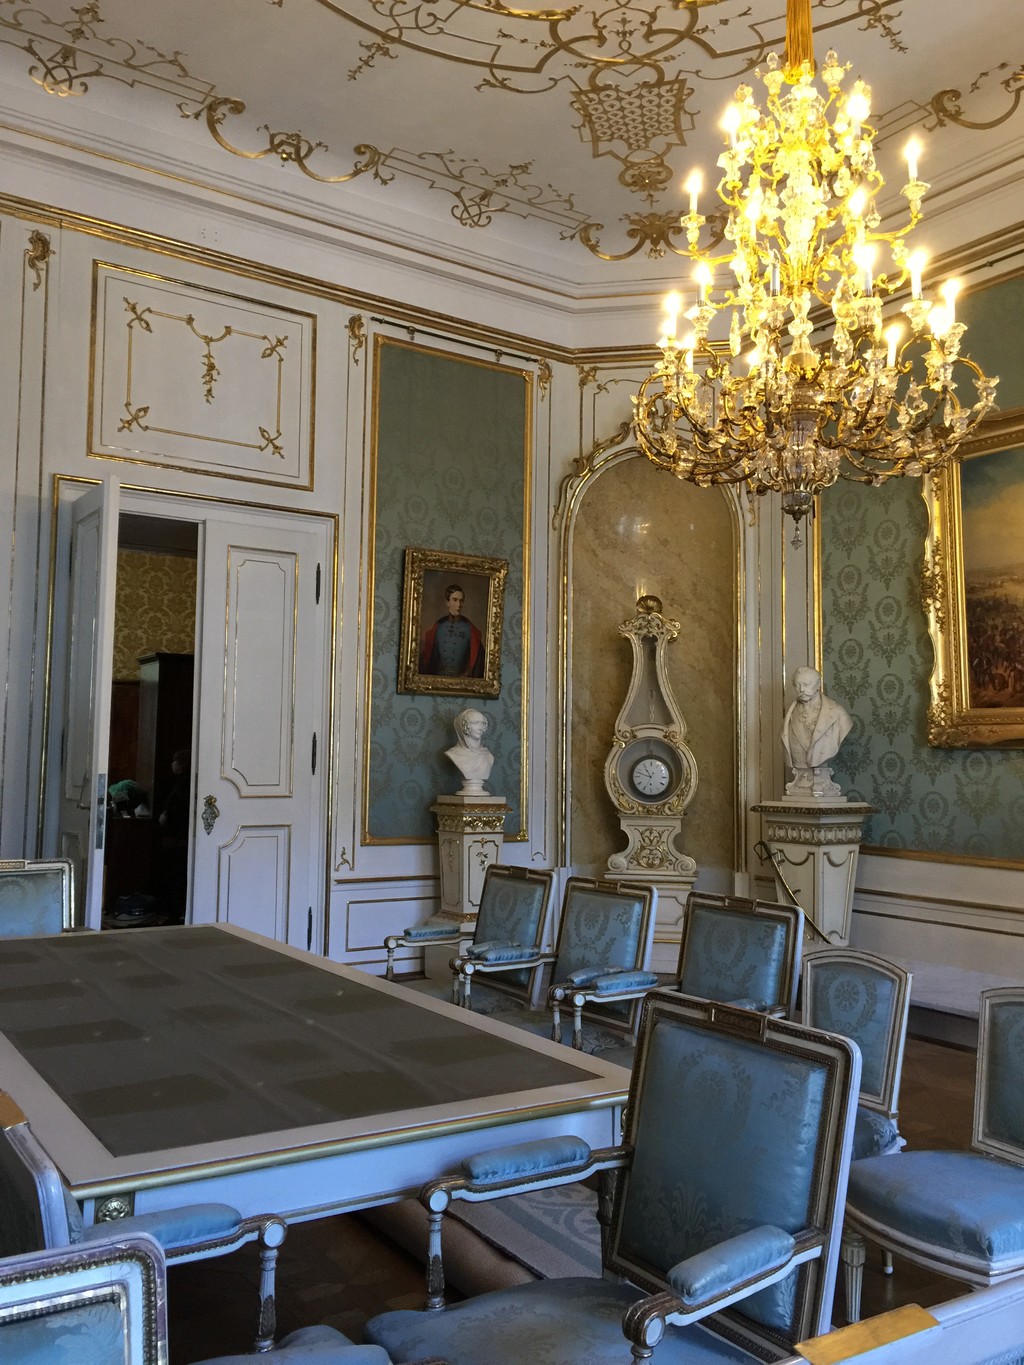 Il Palazzo imperiale di Hofburg